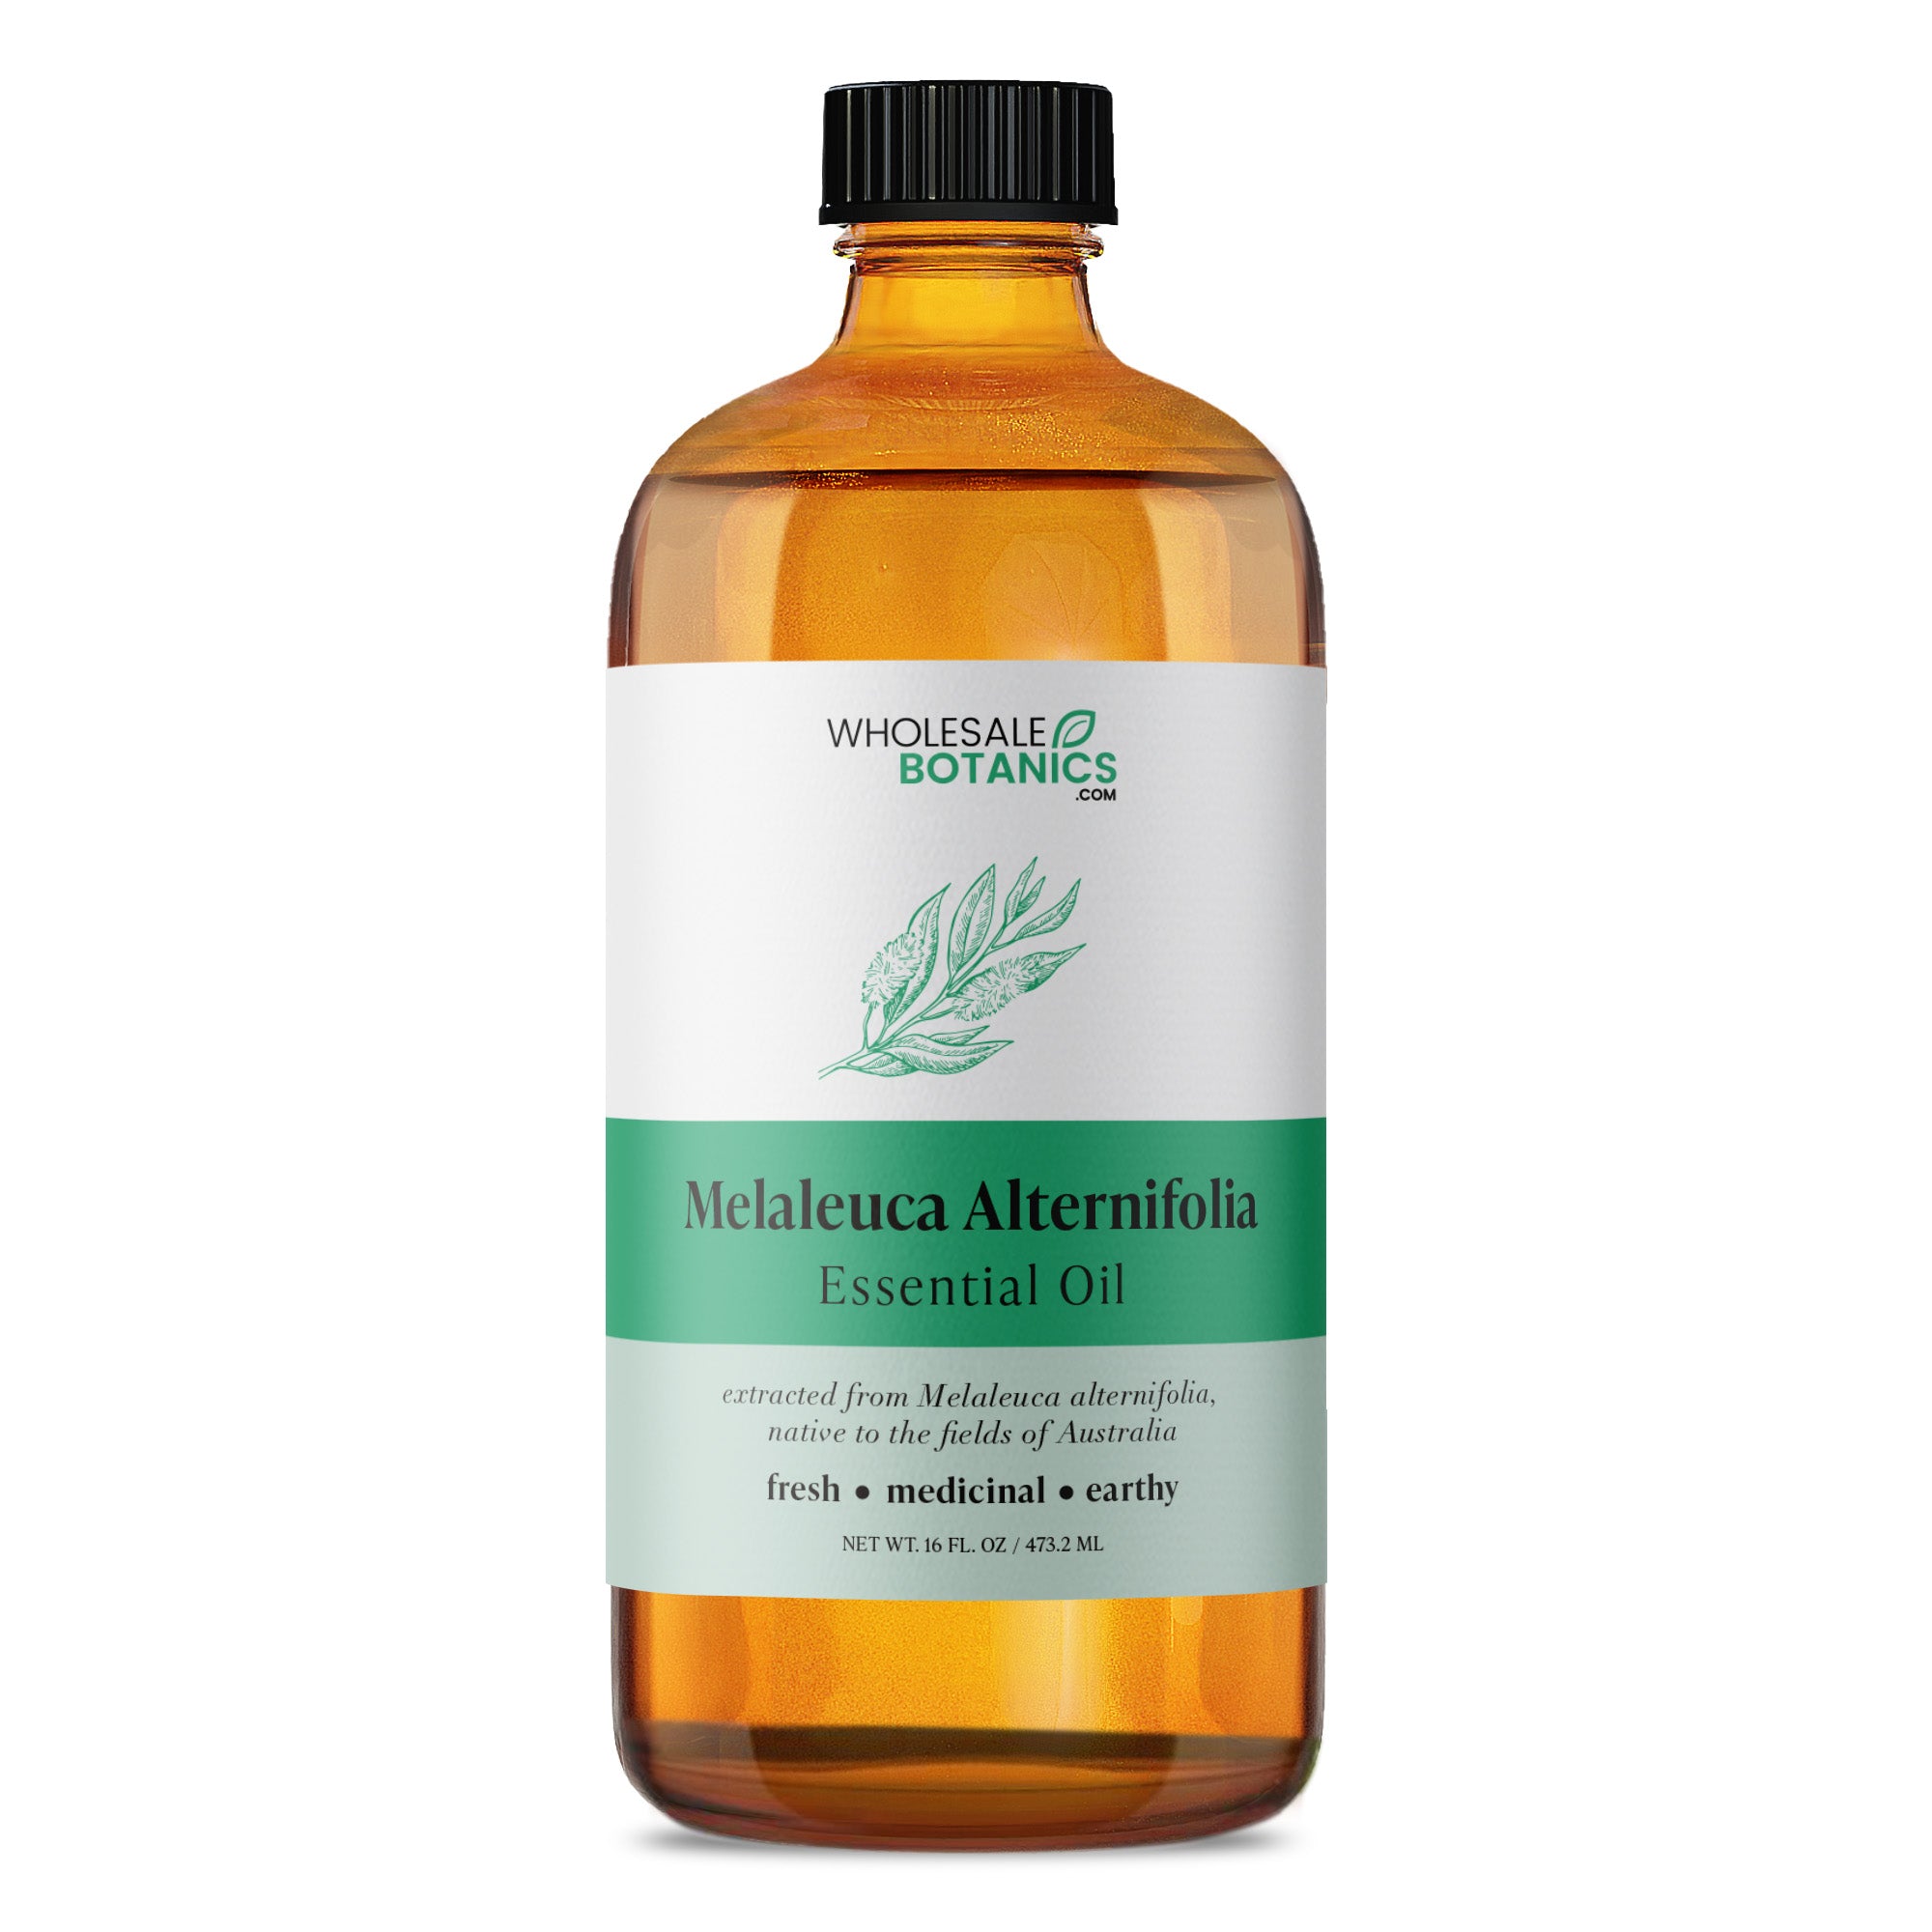 Melaleuca Alternifolia Essential Oil